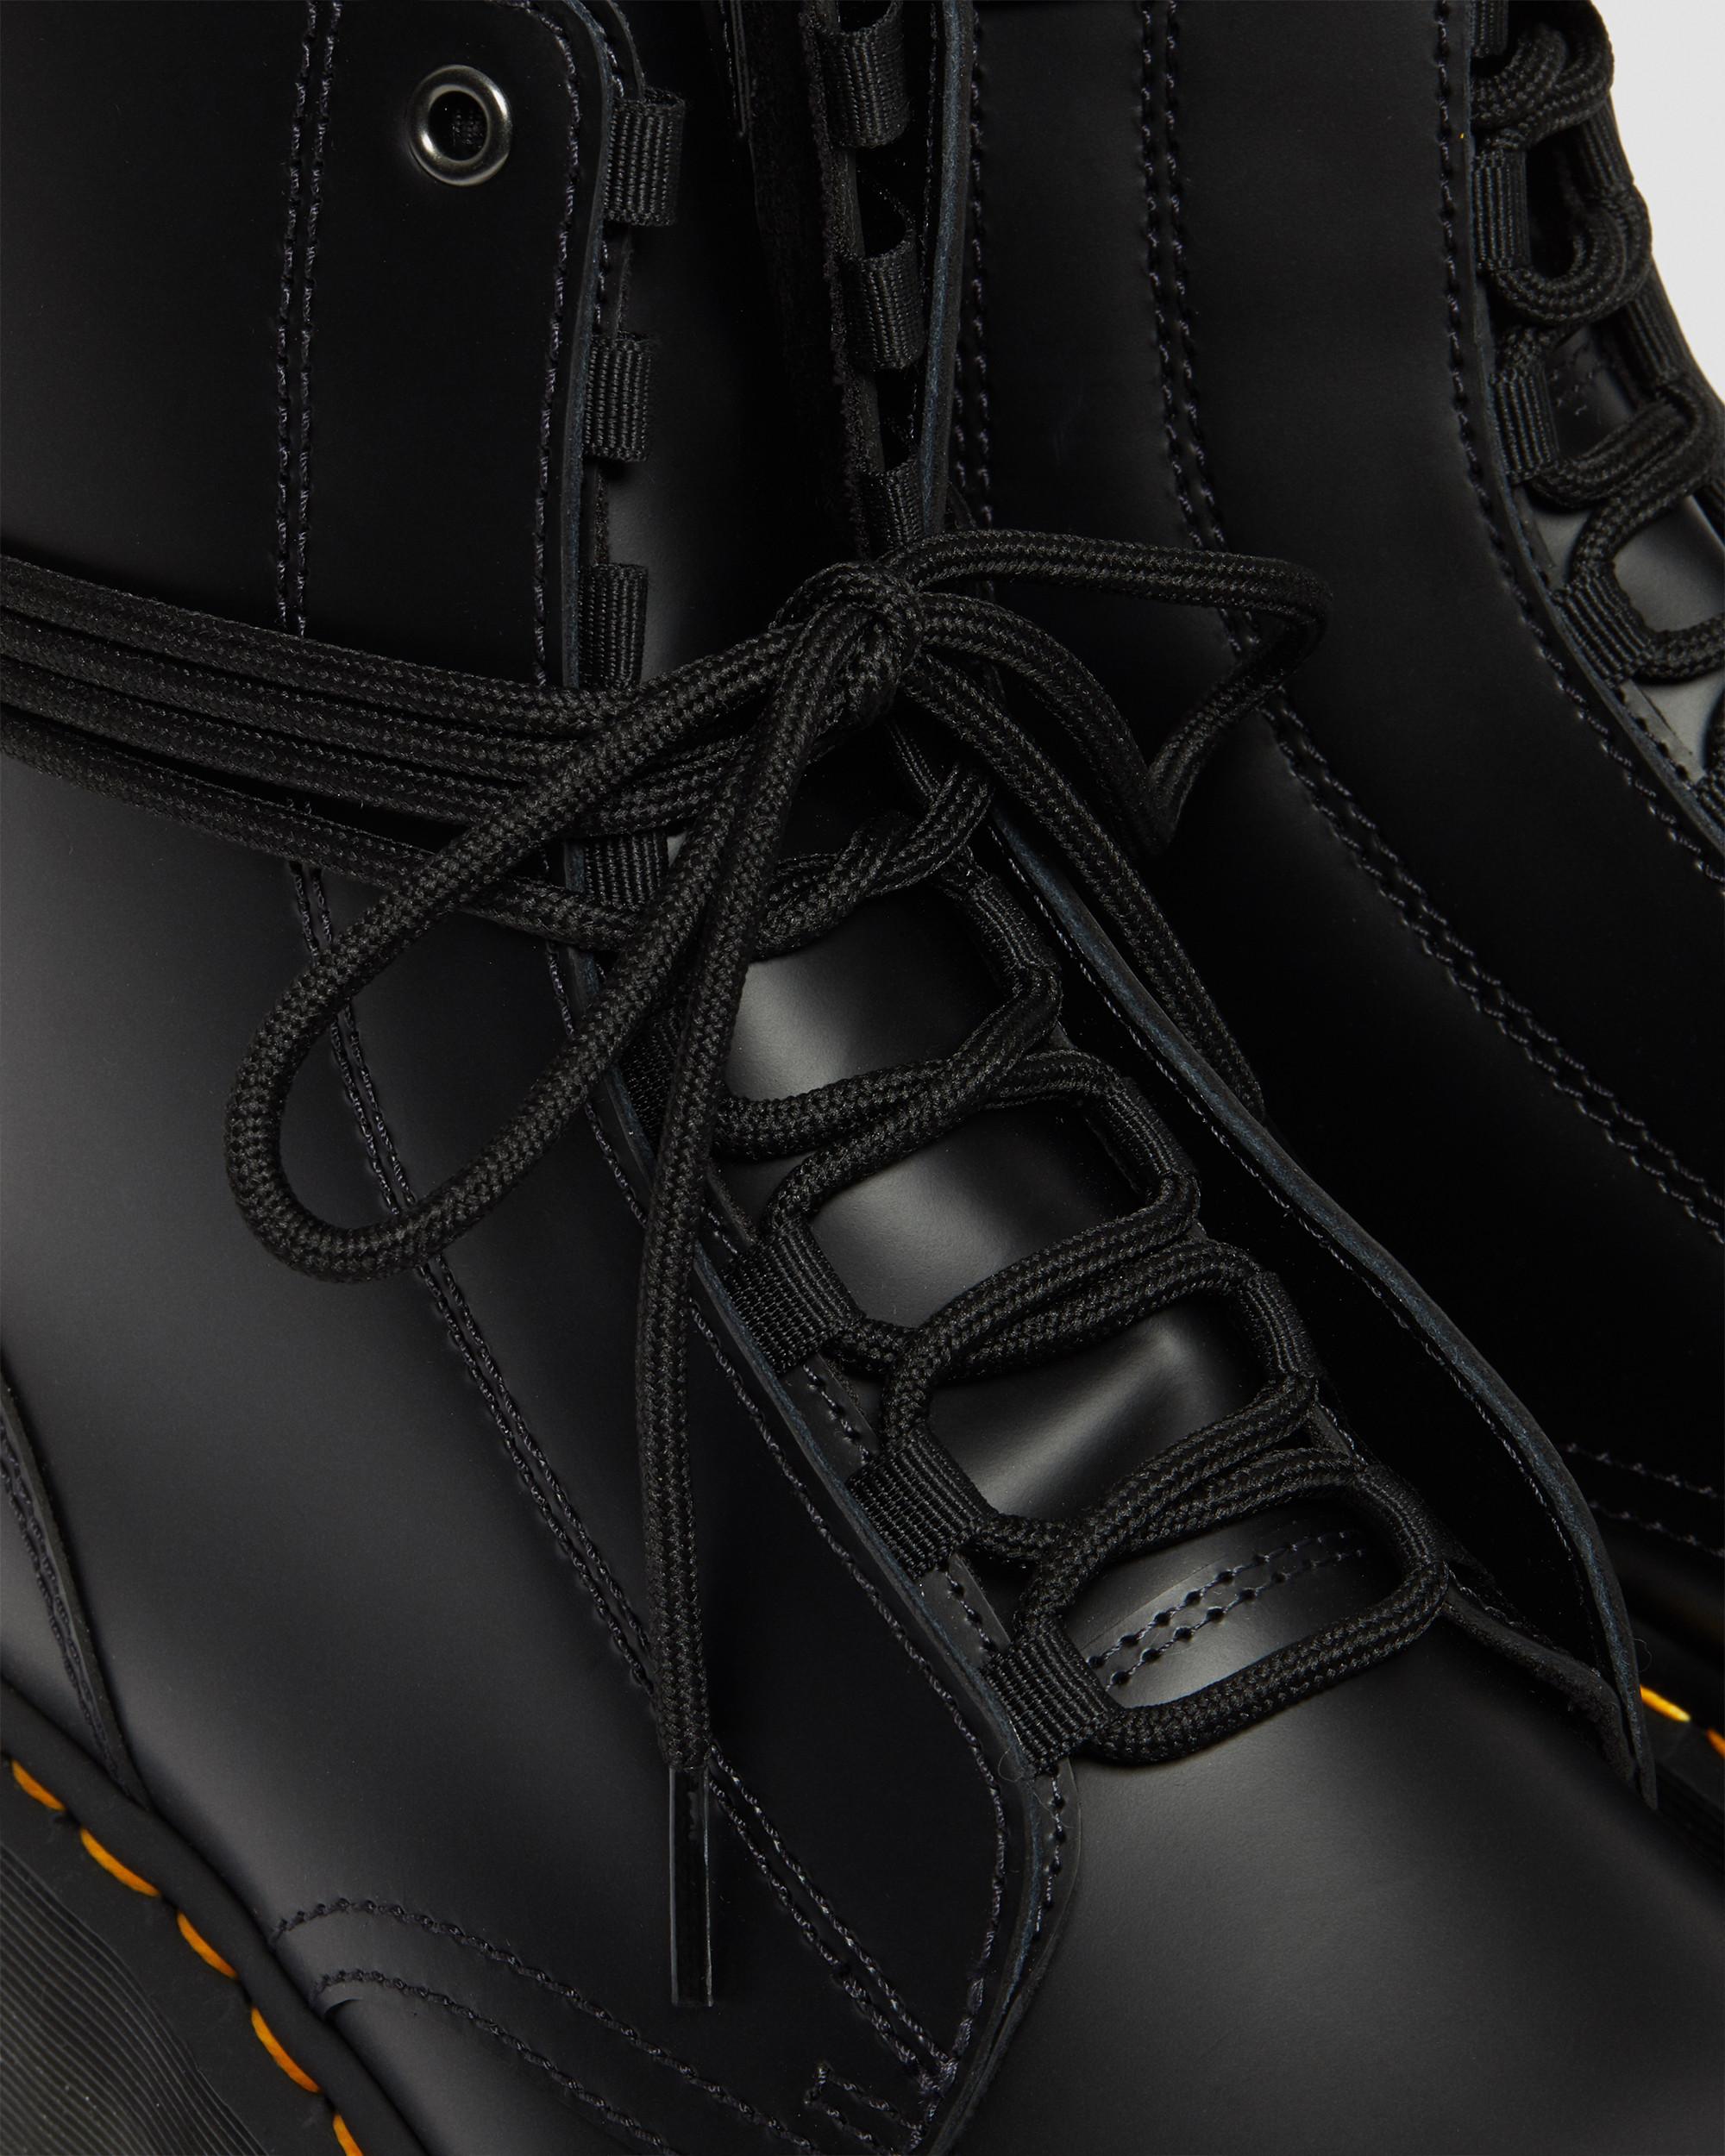 Jarrick Smooth Leather Platform Boots | Dr. Martens